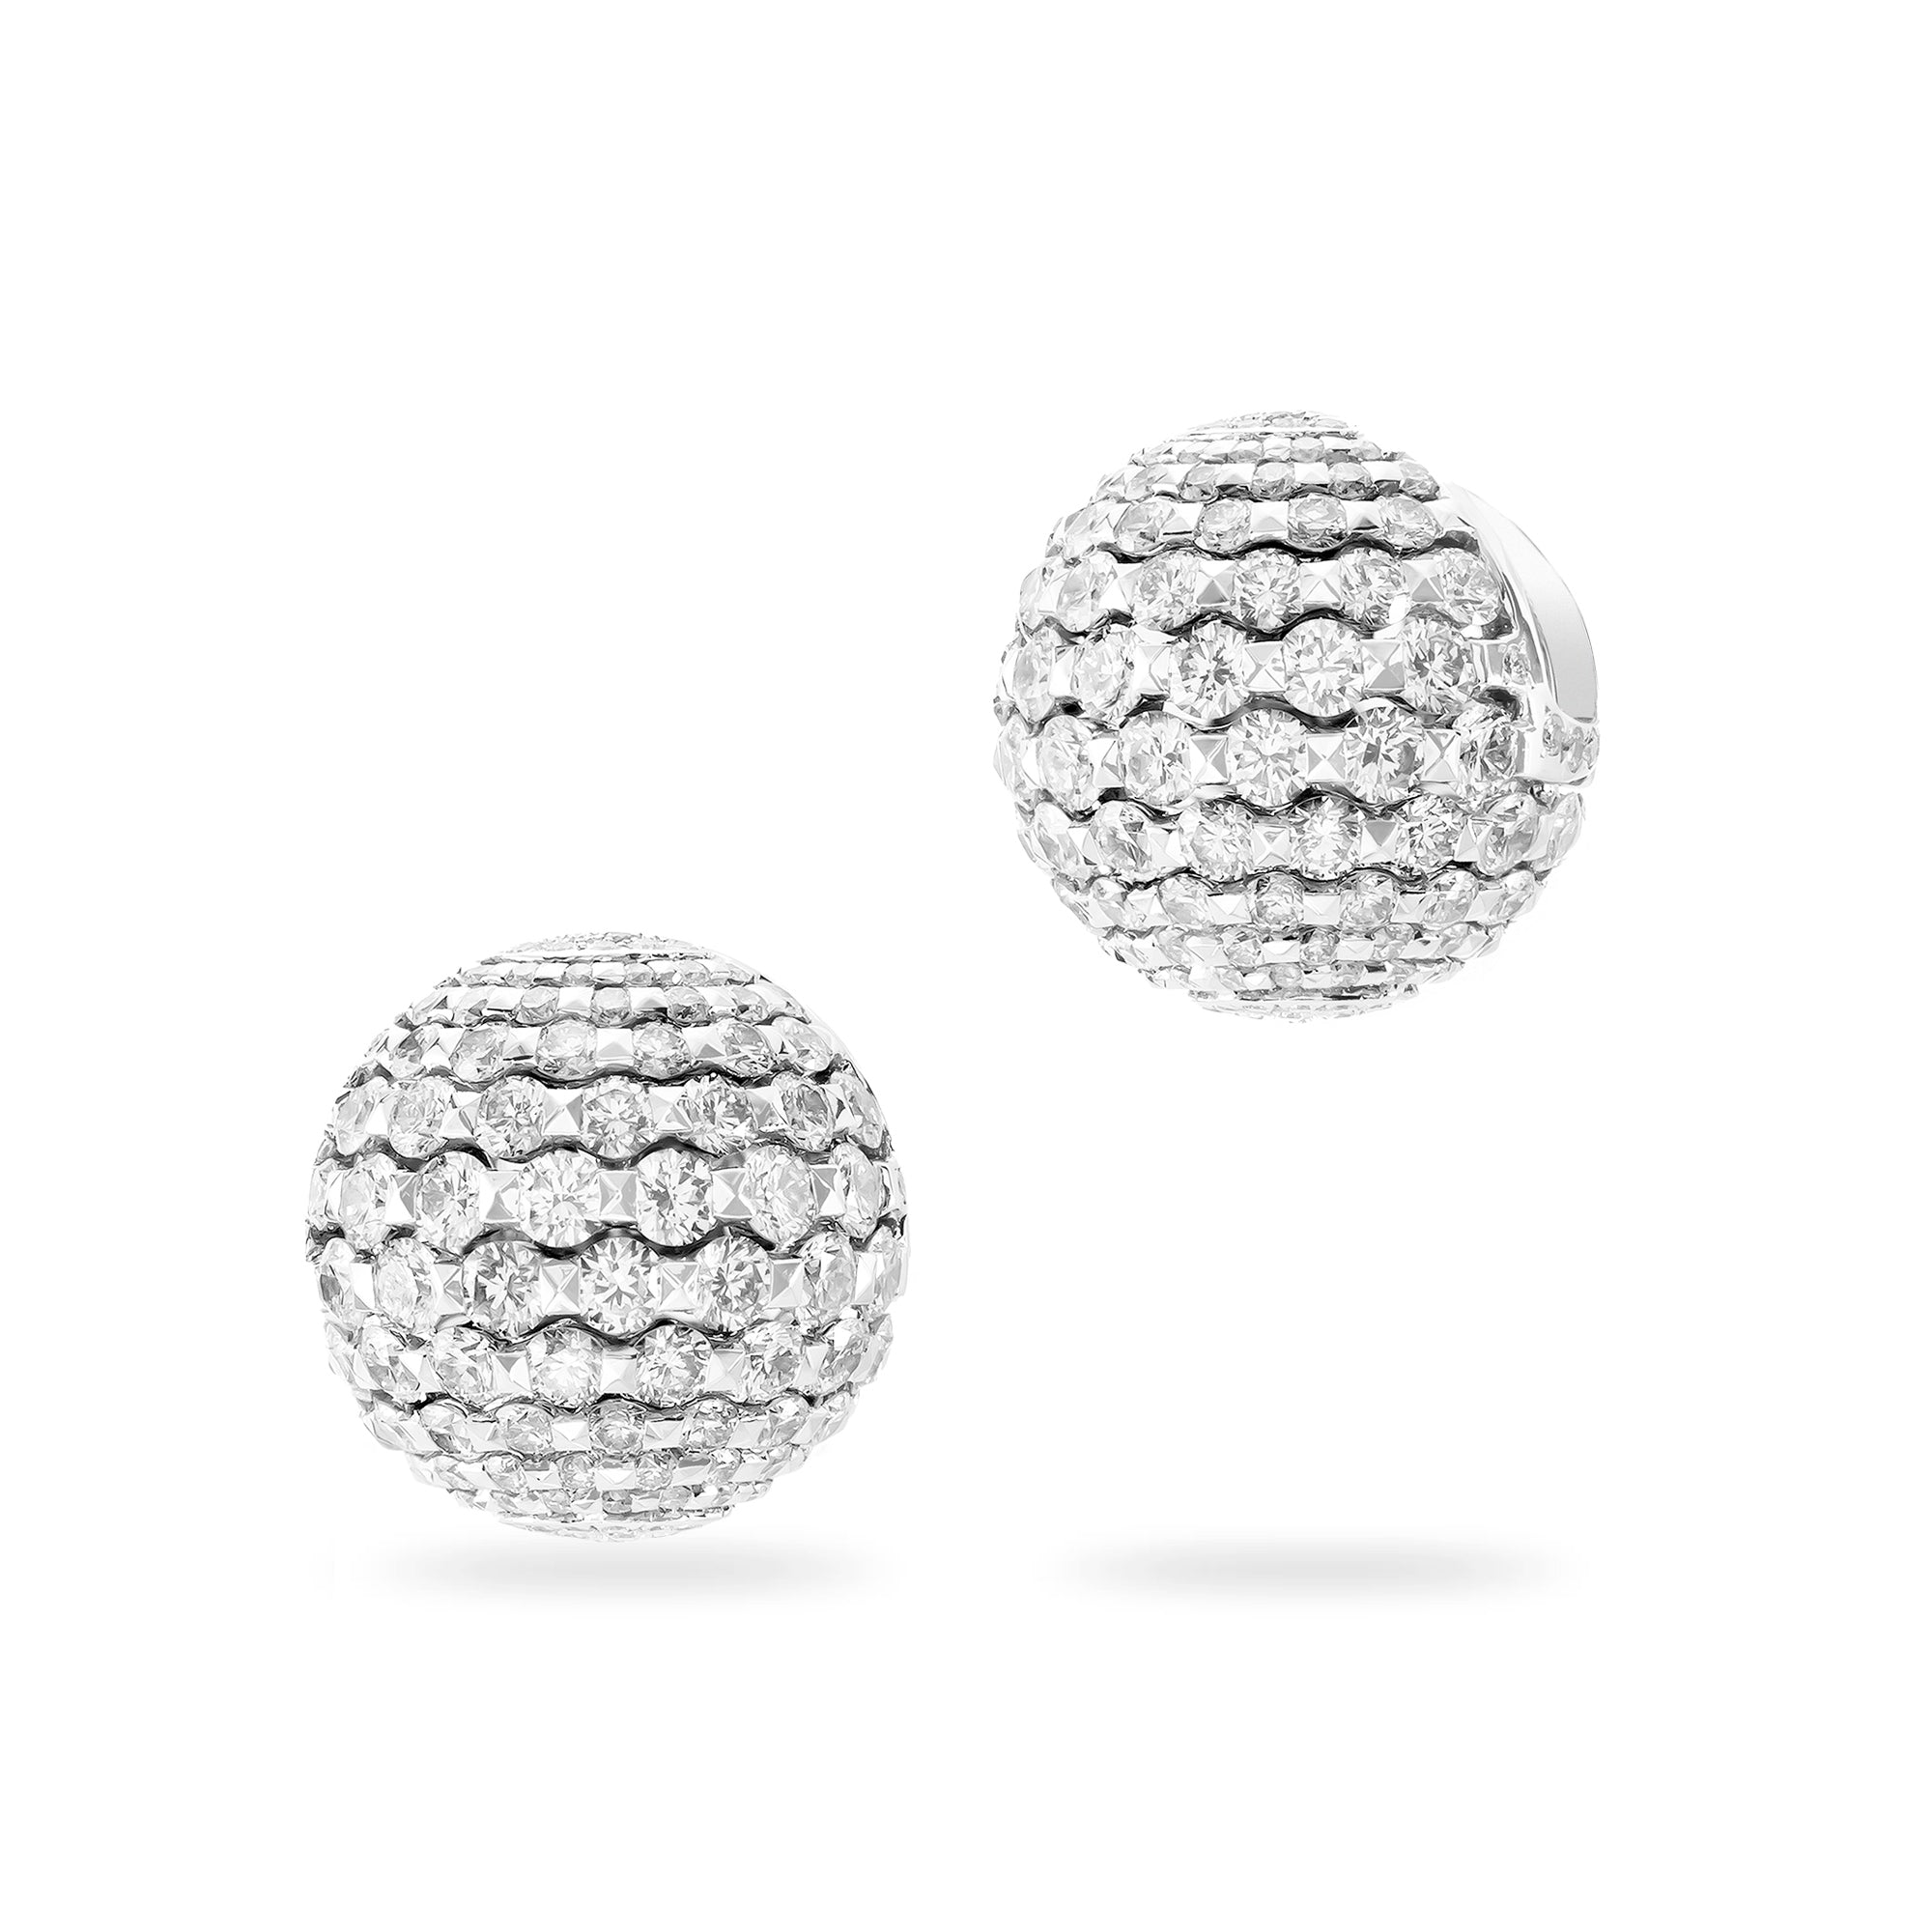 Merveilles Sphere - Diamond Earrings - Small - 15mm